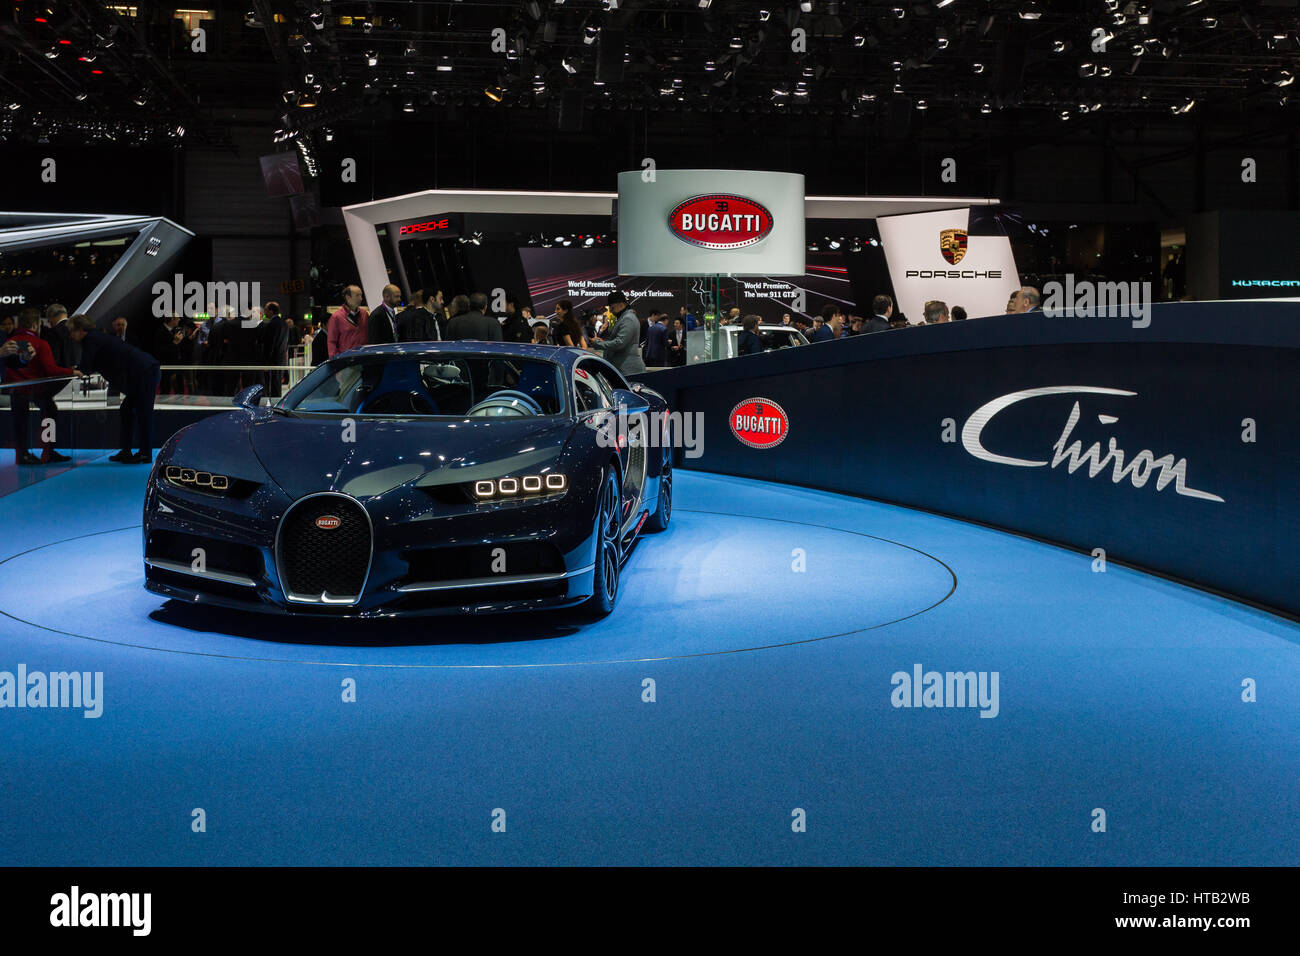 Bugatti Showroom Stockfotos und -bilder Kaufen - Alamy